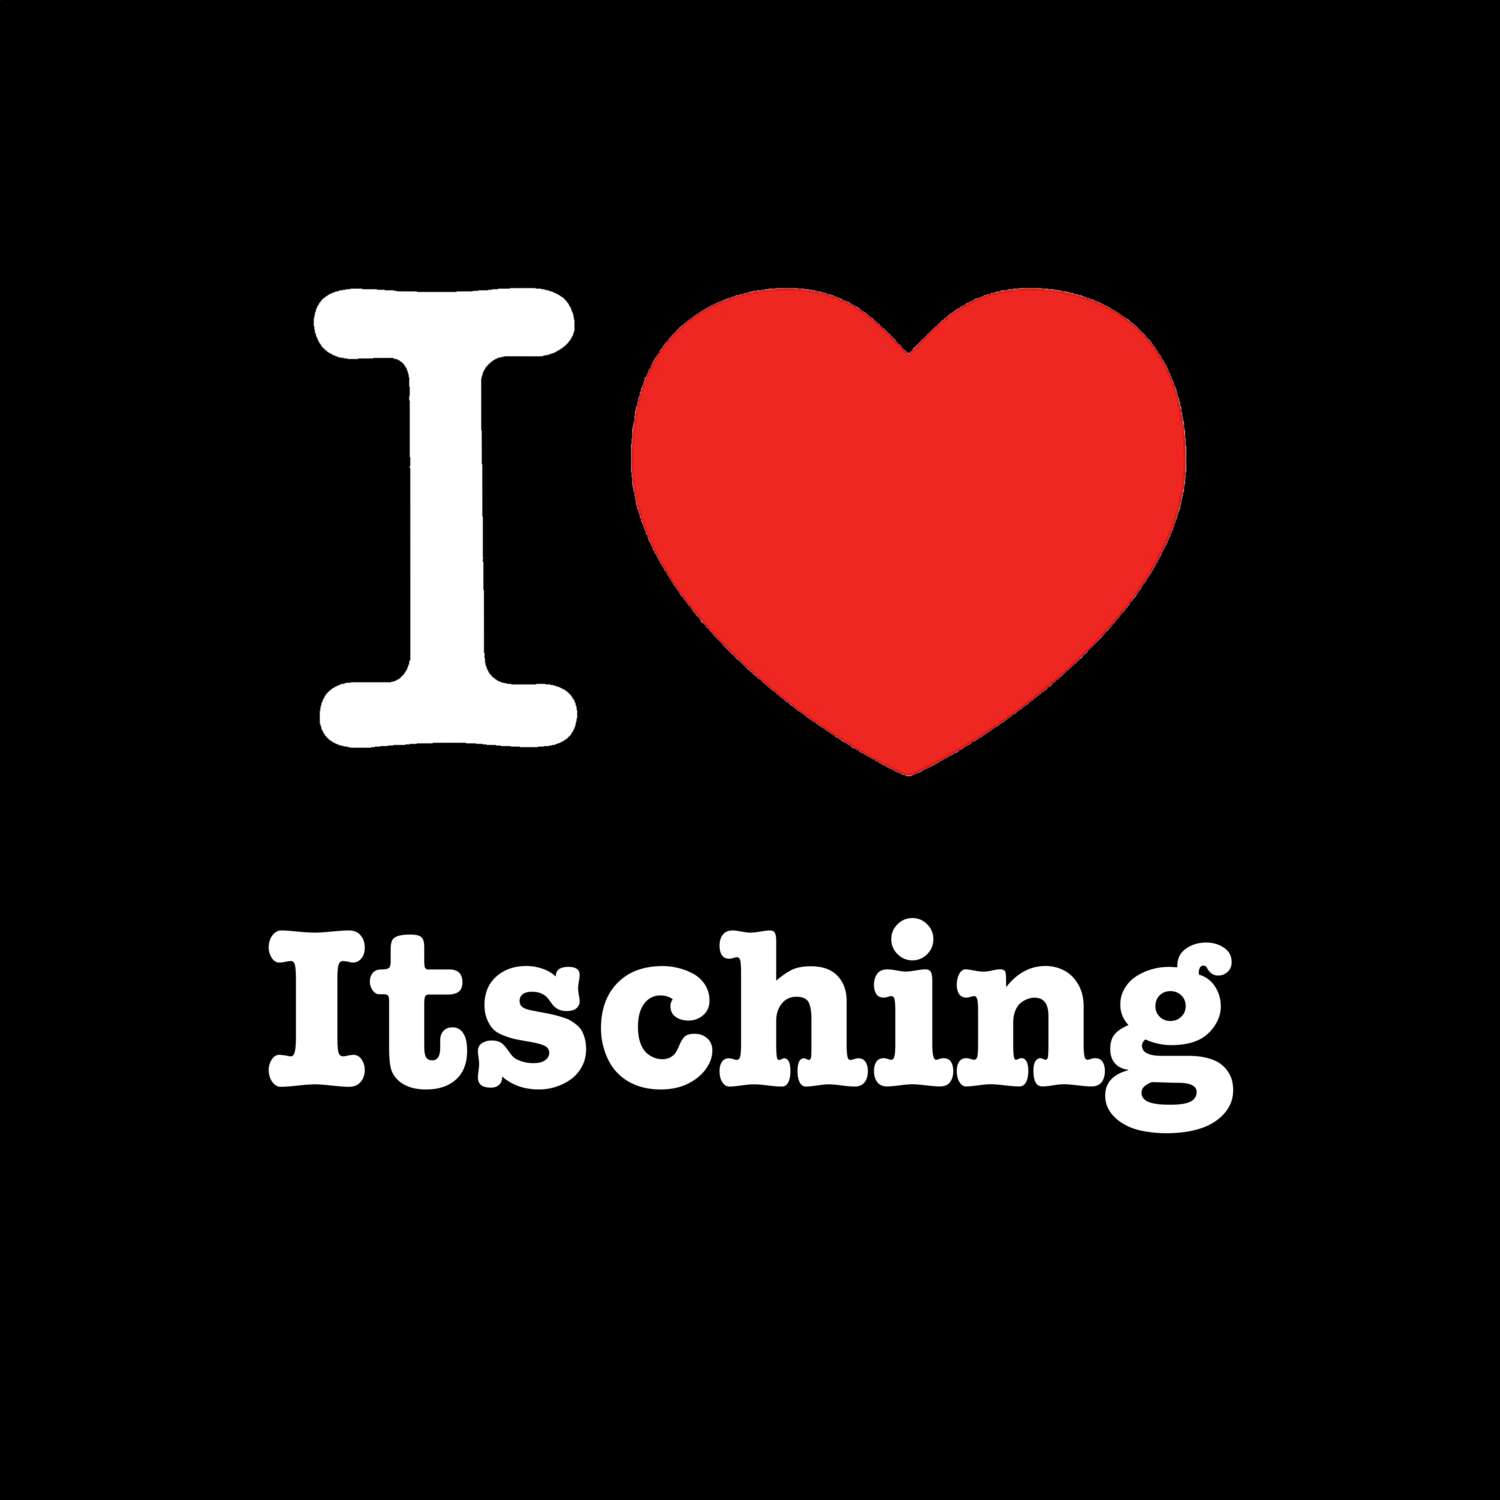 Itsching T-Shirt »I love«